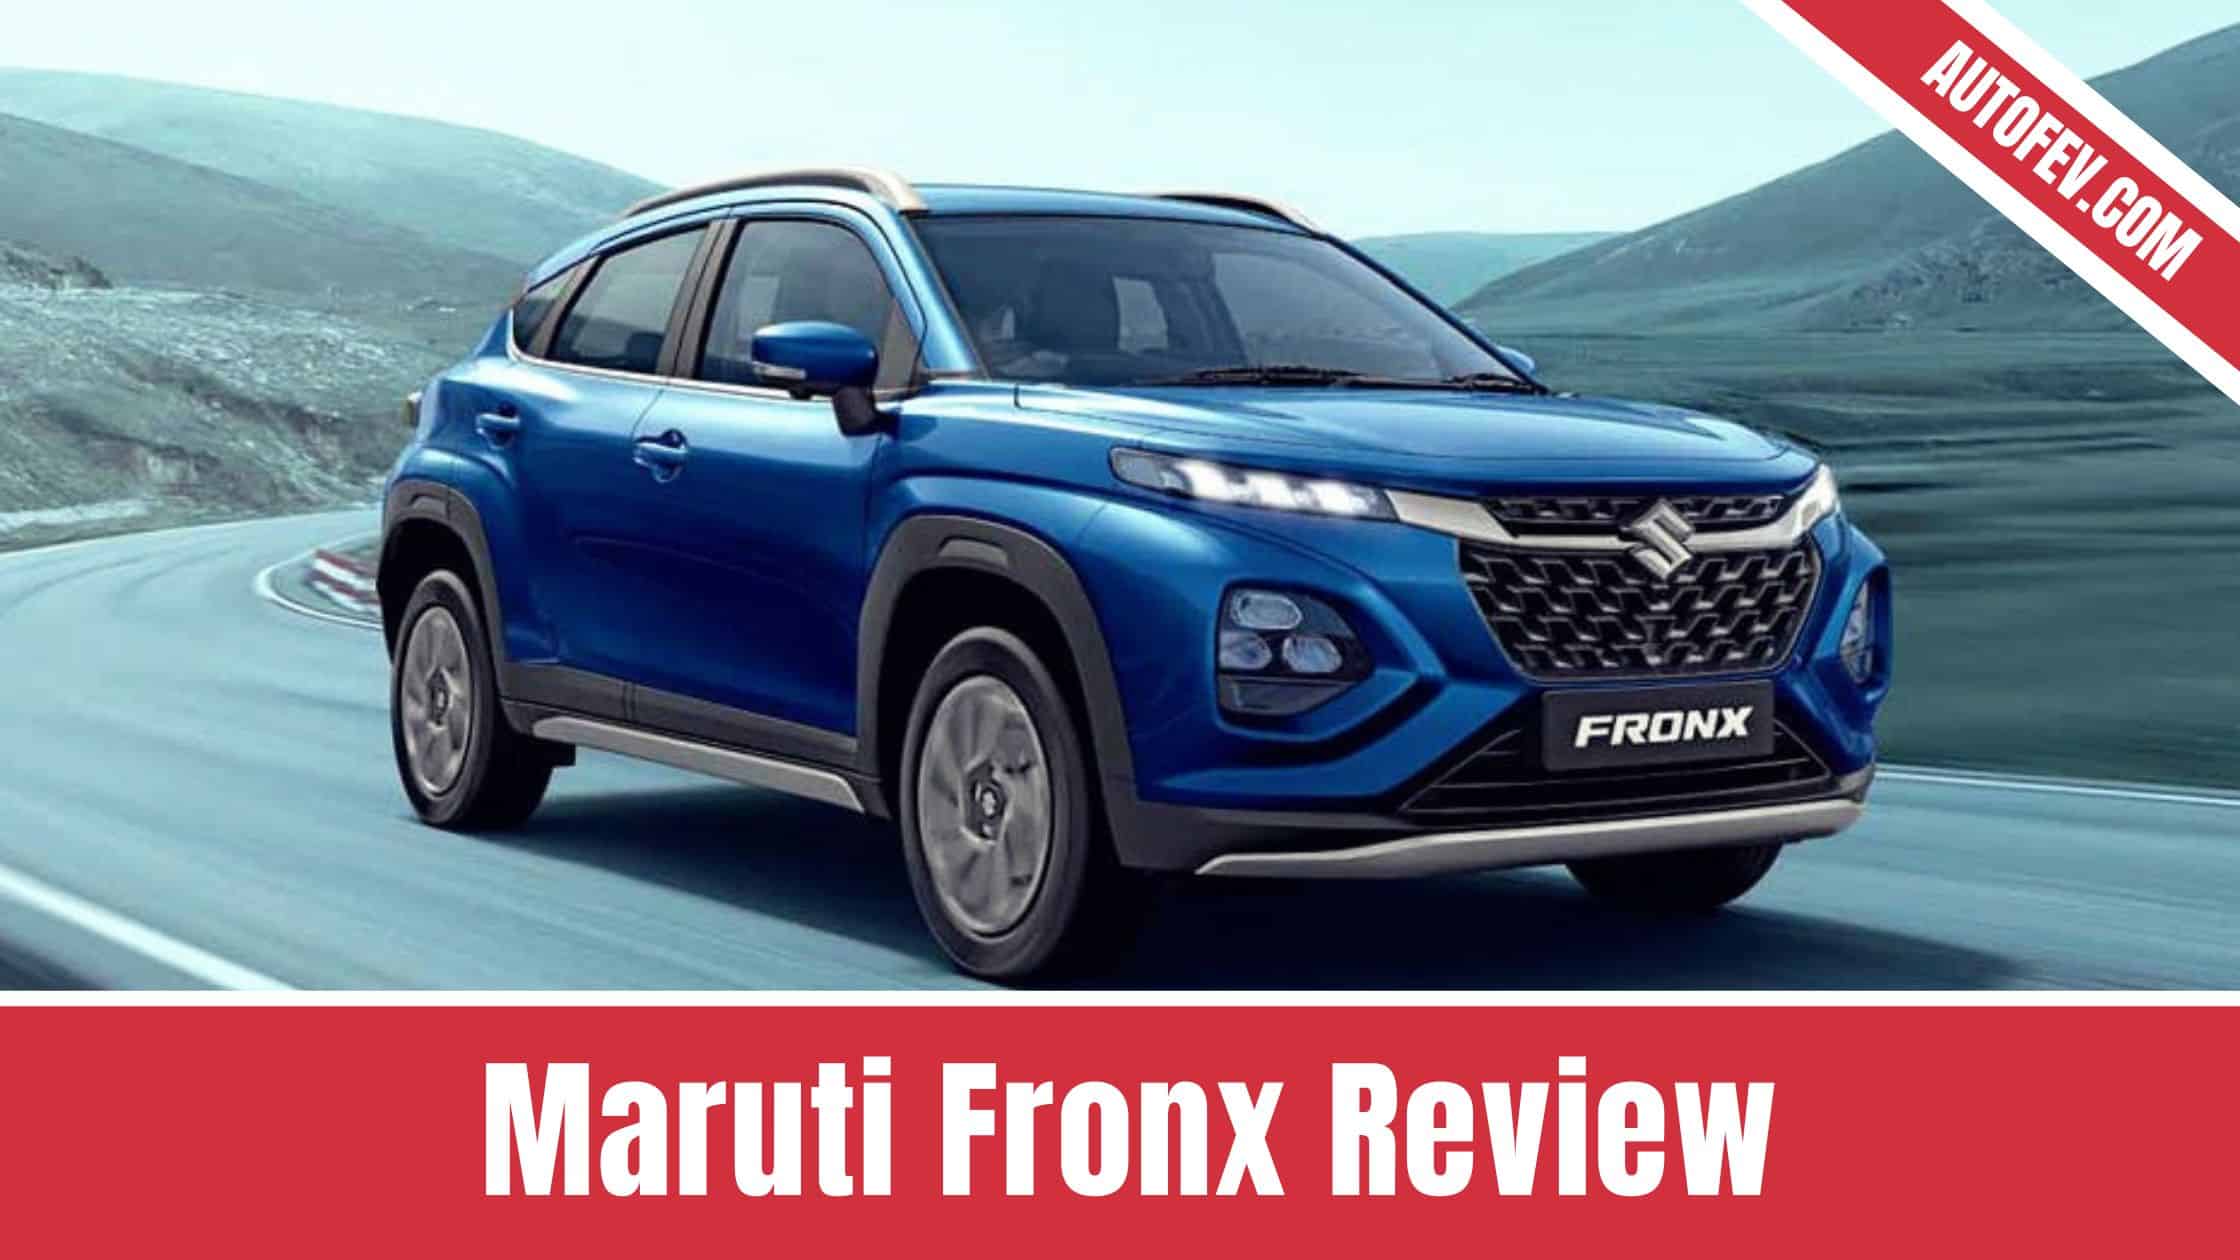 Maruti Fronx Review